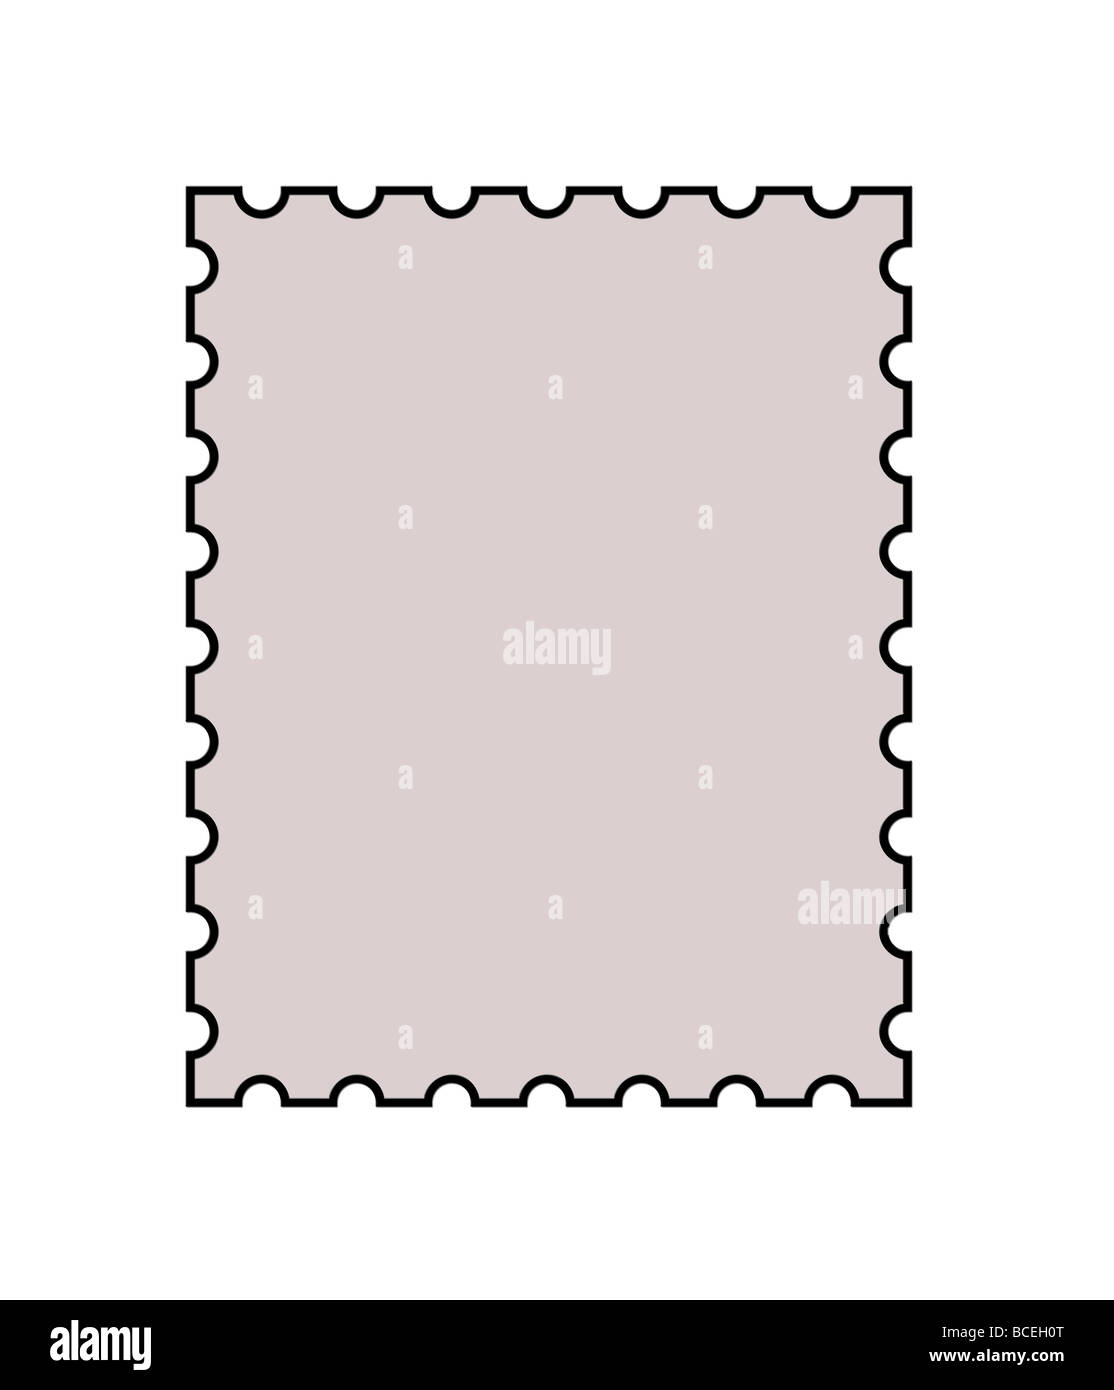 Blank francobollo con copia spazio nel centro isolato su sfondo bianco Foto Stock